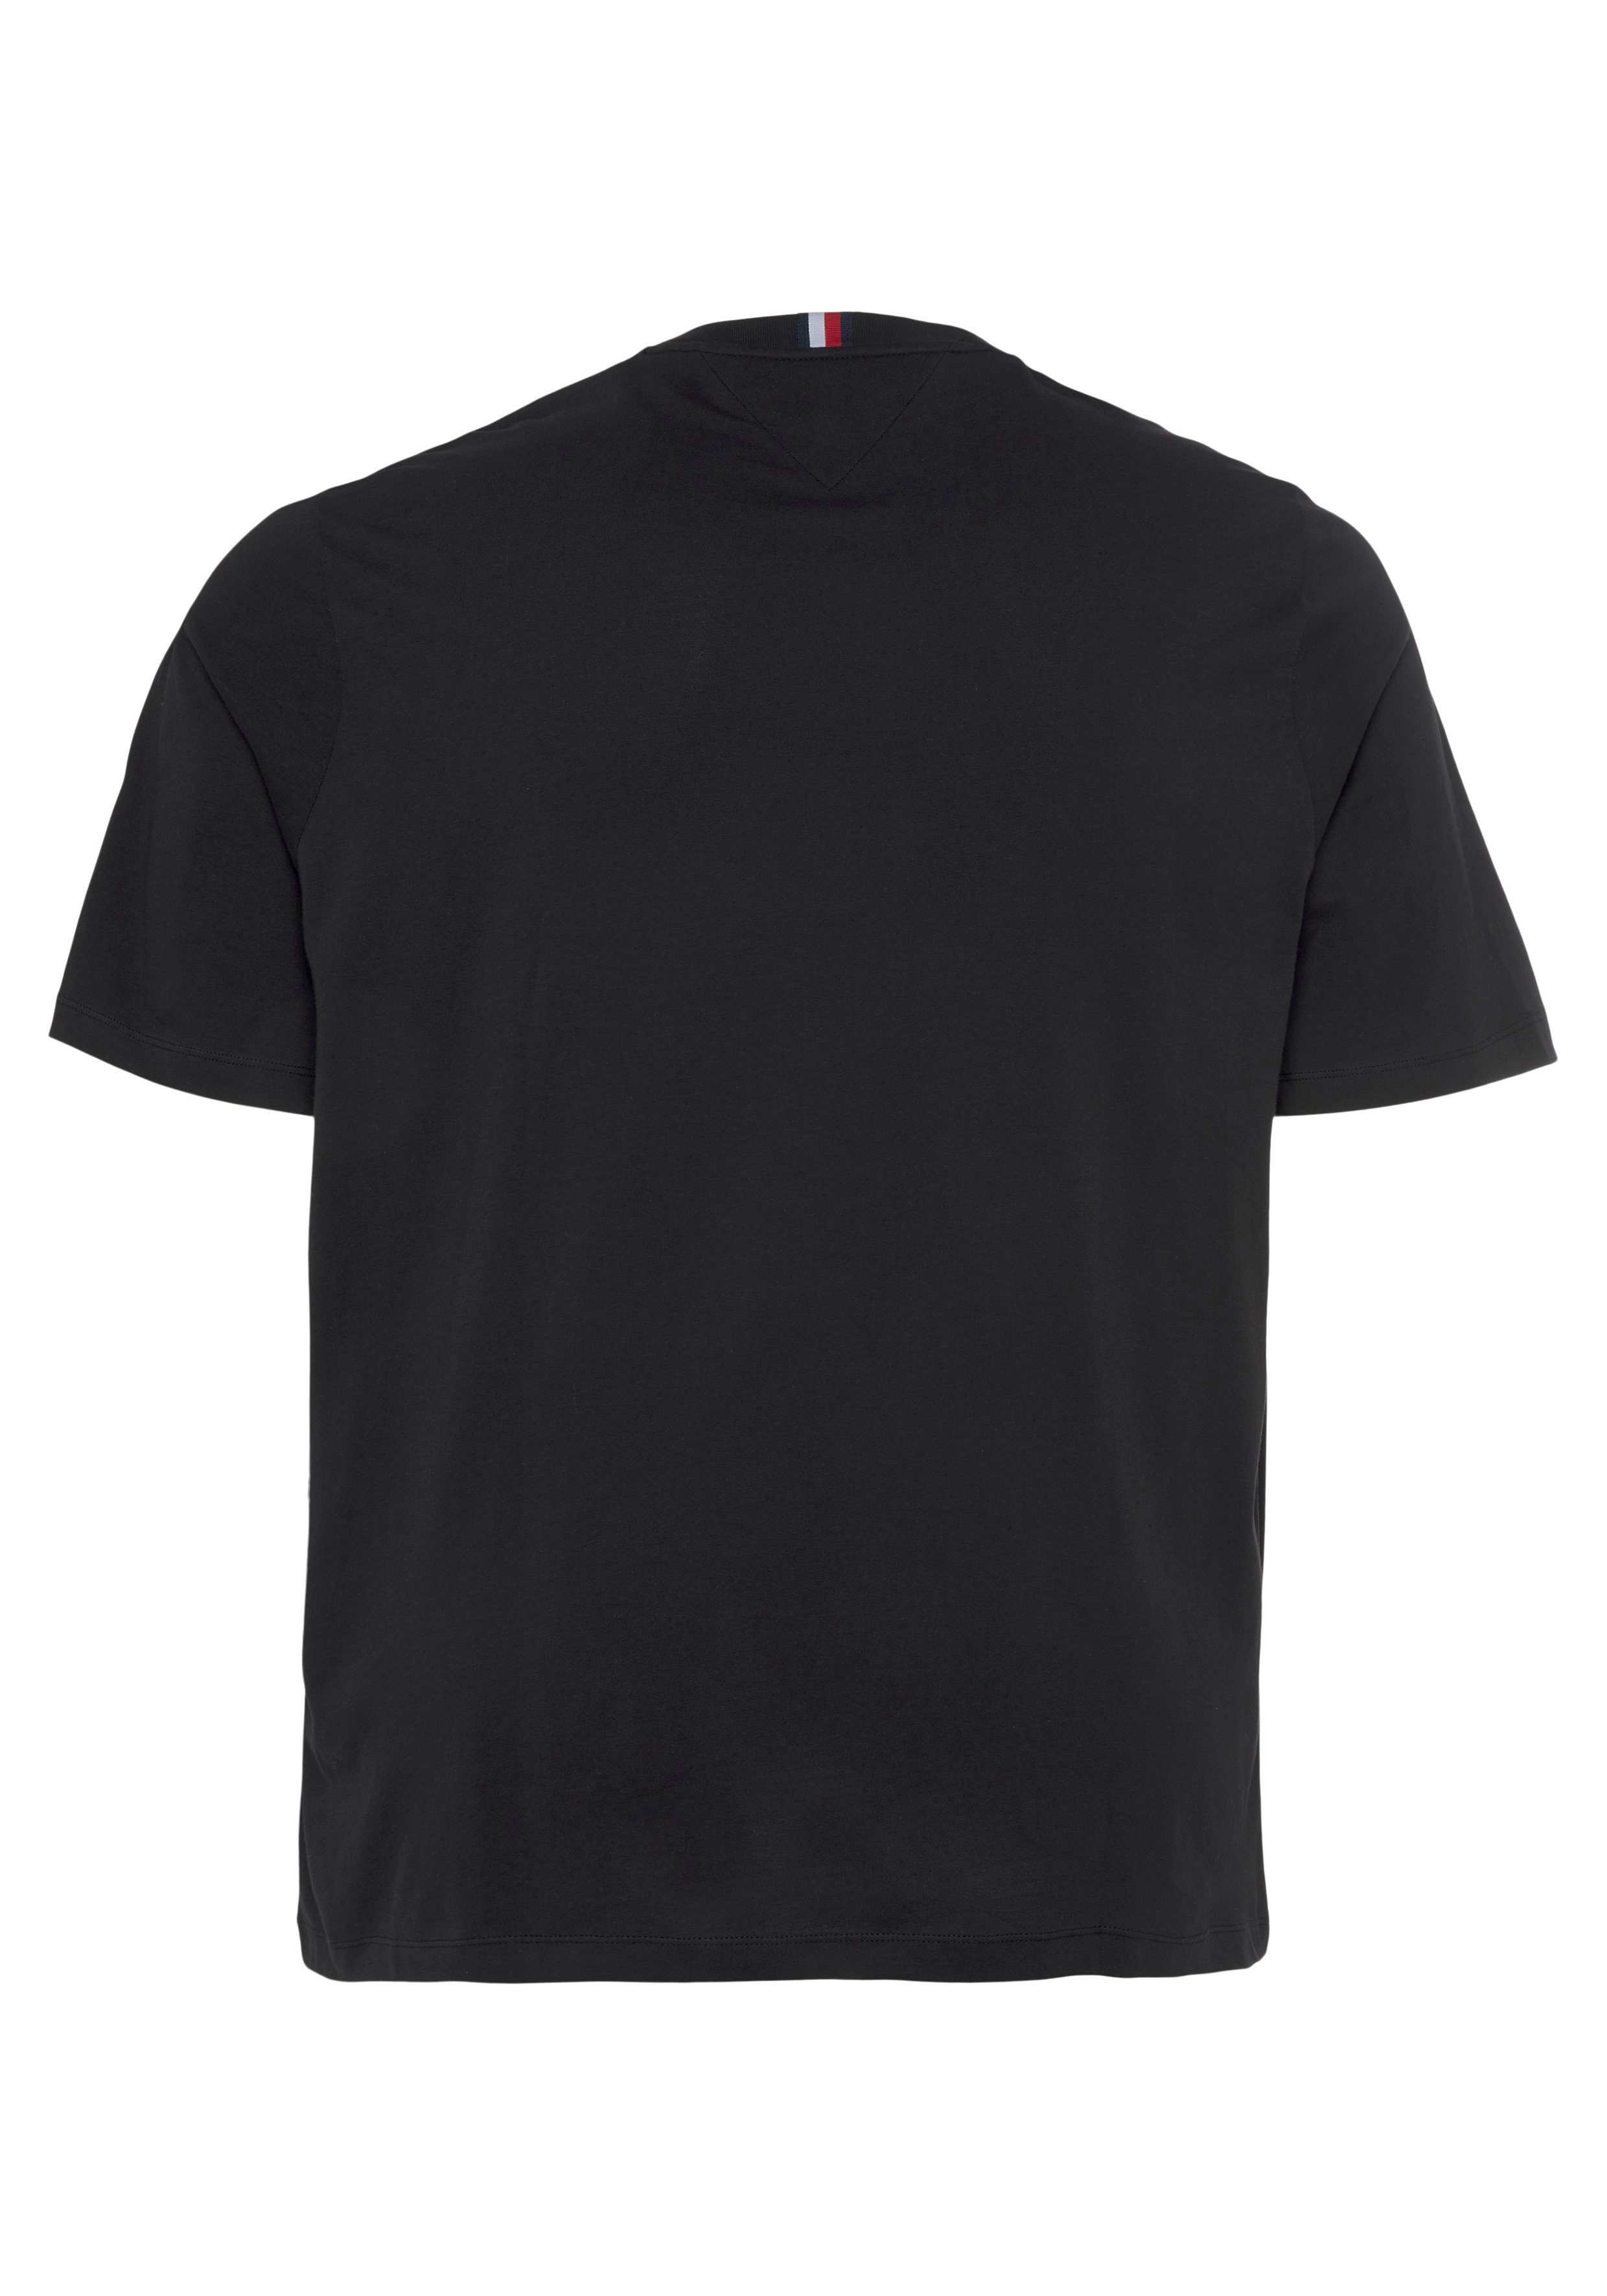 Big Black TEE-B Hilfiger & Tall BT-SHADOW Tommy HILFIGER T-Shirt REG